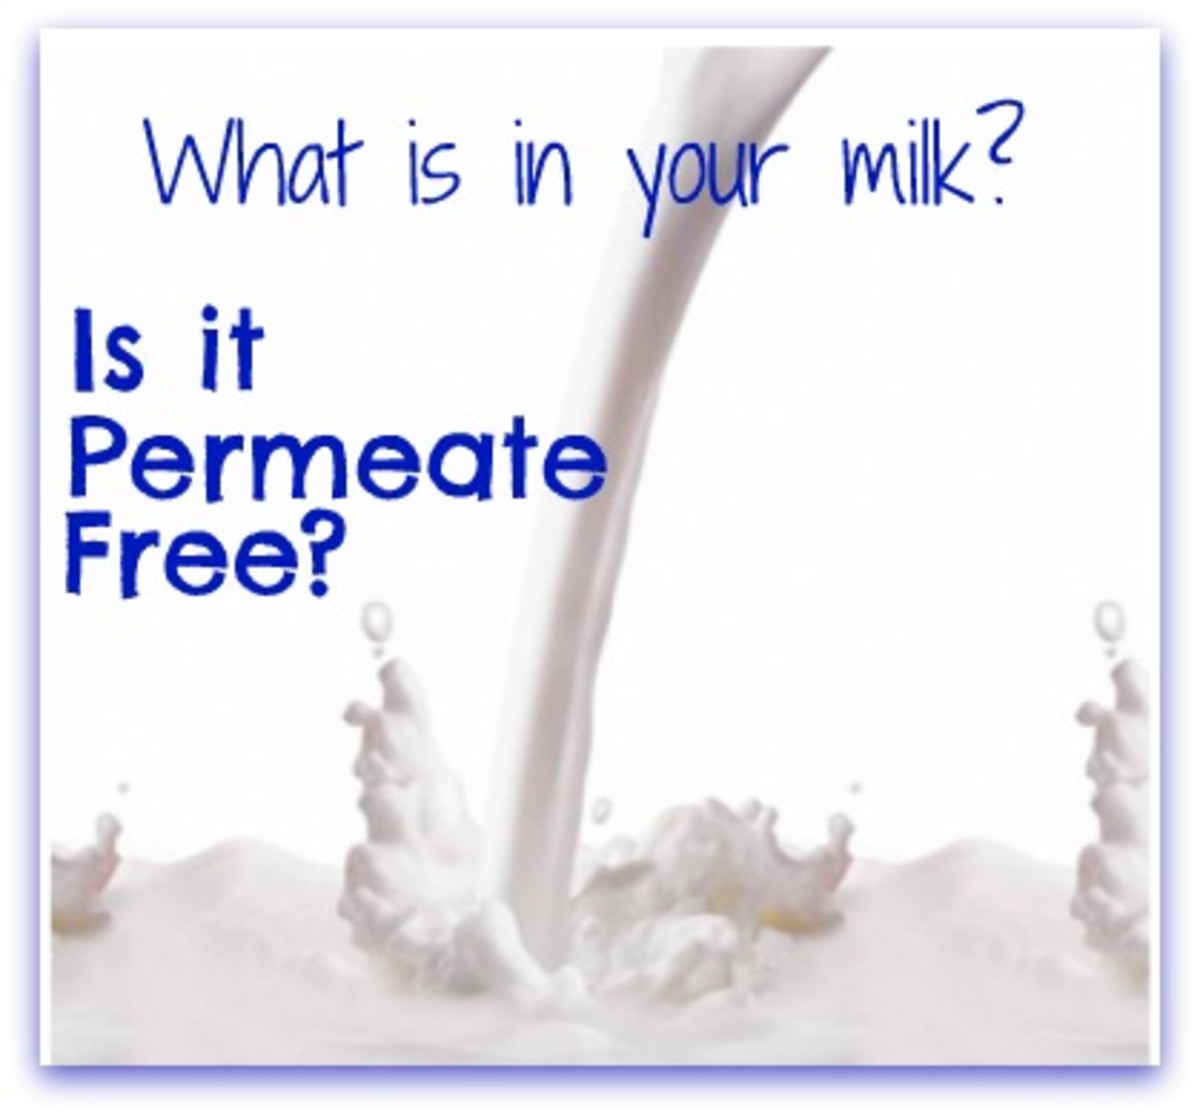 What is permeate free milk?